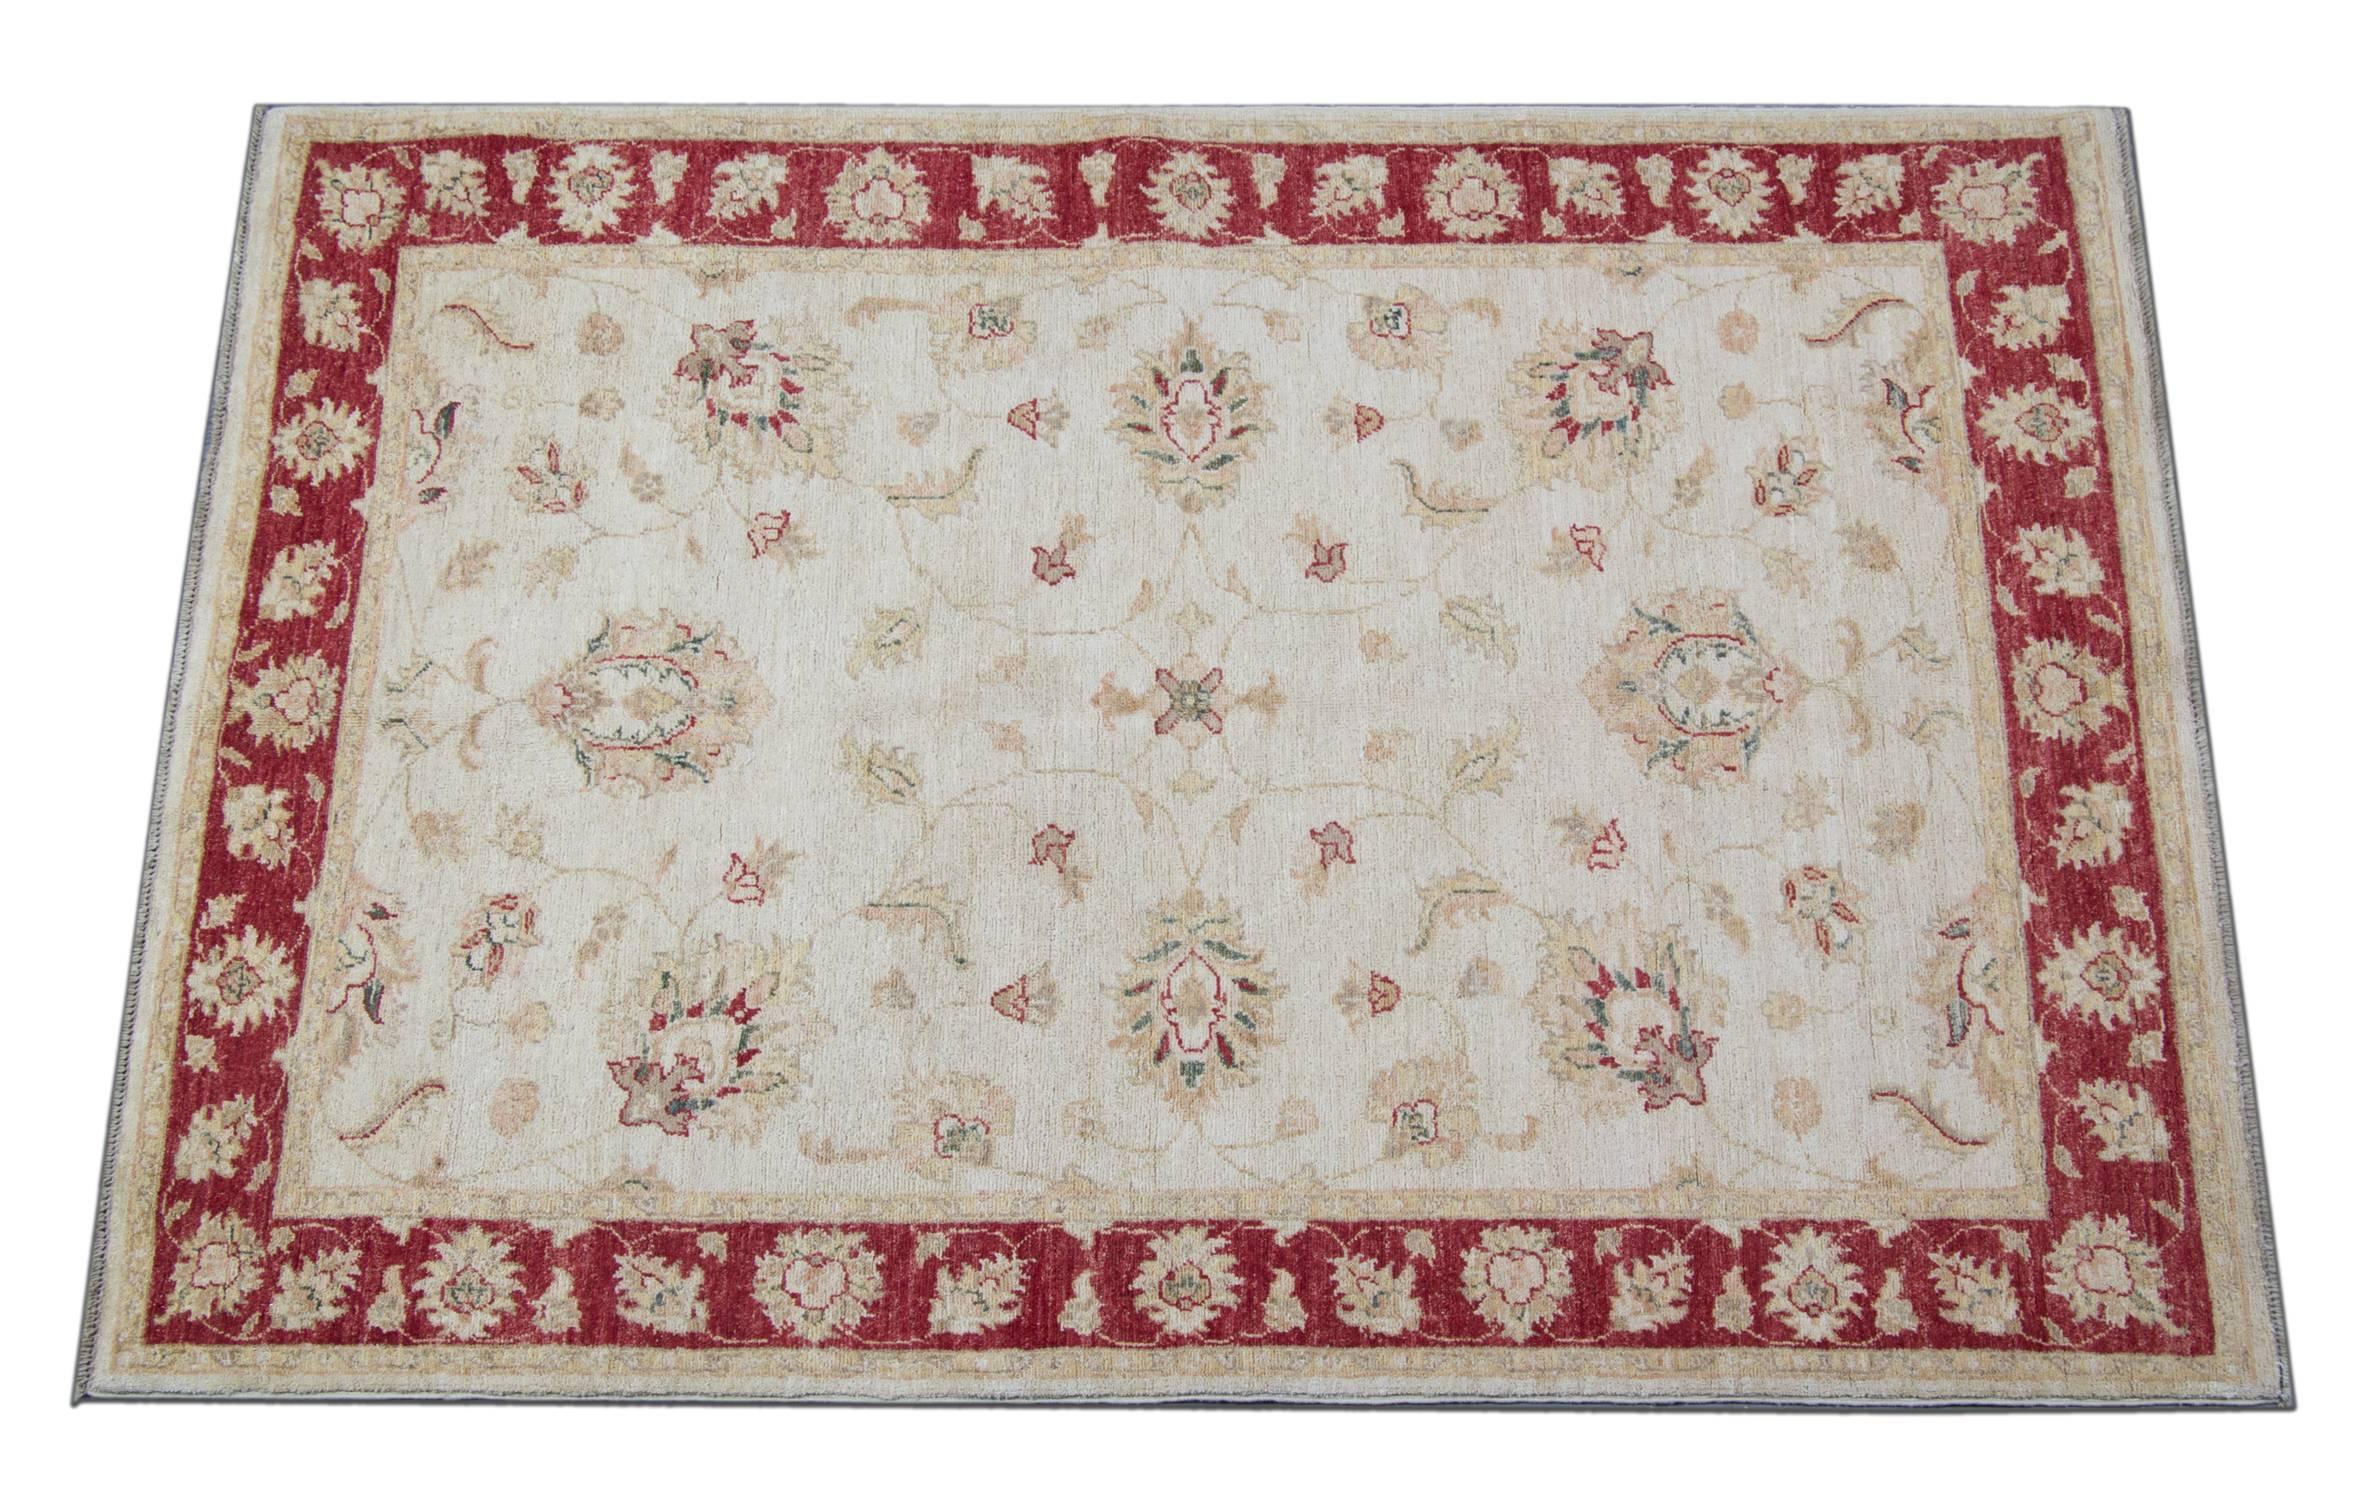 Ce tapis blanc doré avec une magnifique bordure rouge est un tapis tissé Ziegler Sultanabad fabriqué sur nos métiers par nos maîtres tisserands en Afghanistan. Ces tapis faits main sont tissés avec des teintures végétales naturelles et de la laine